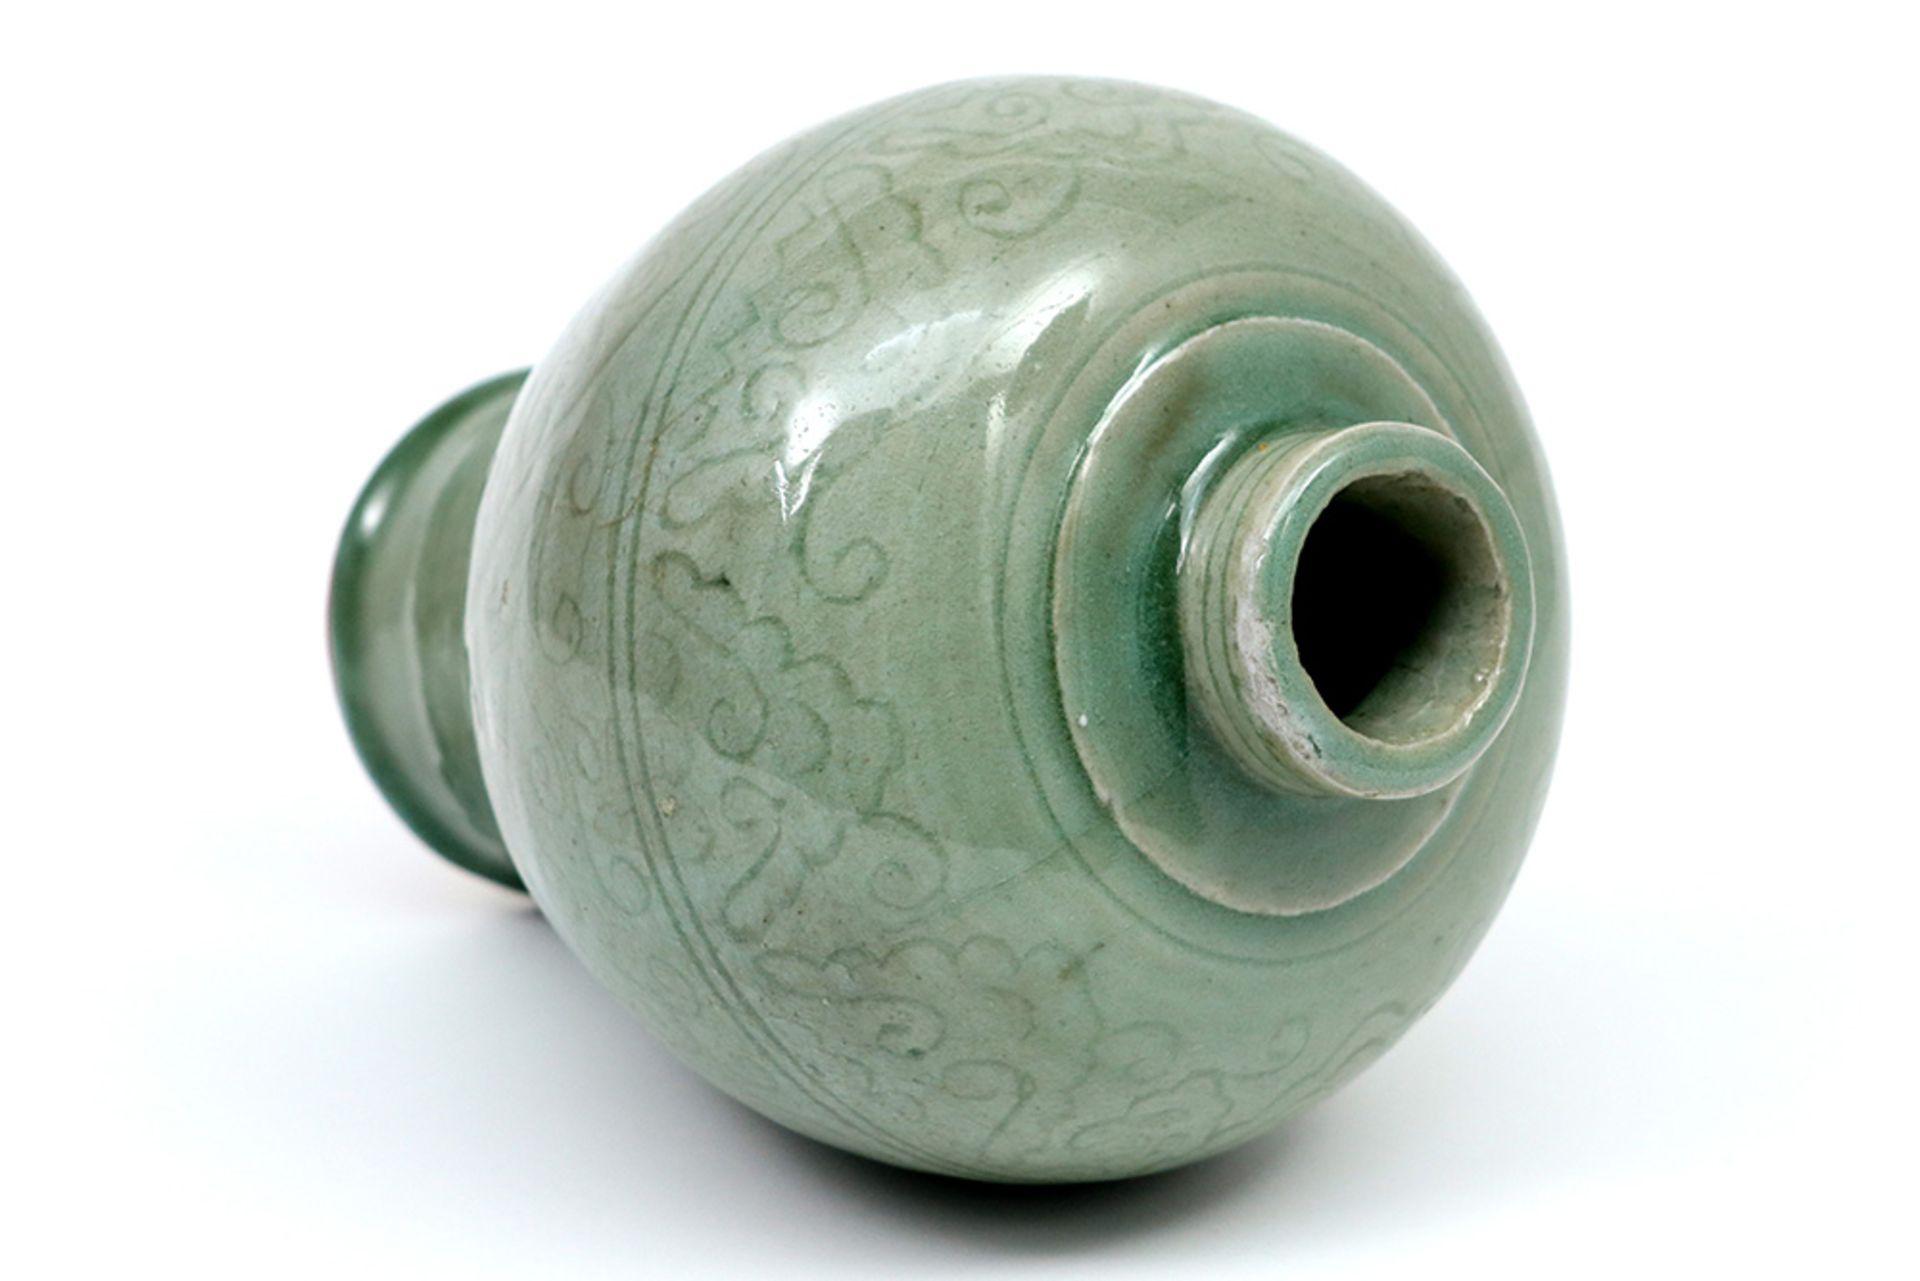 明竹口窑青瓷刻花梅瓶值得收藏么2021年12月05日-唐珍收藏